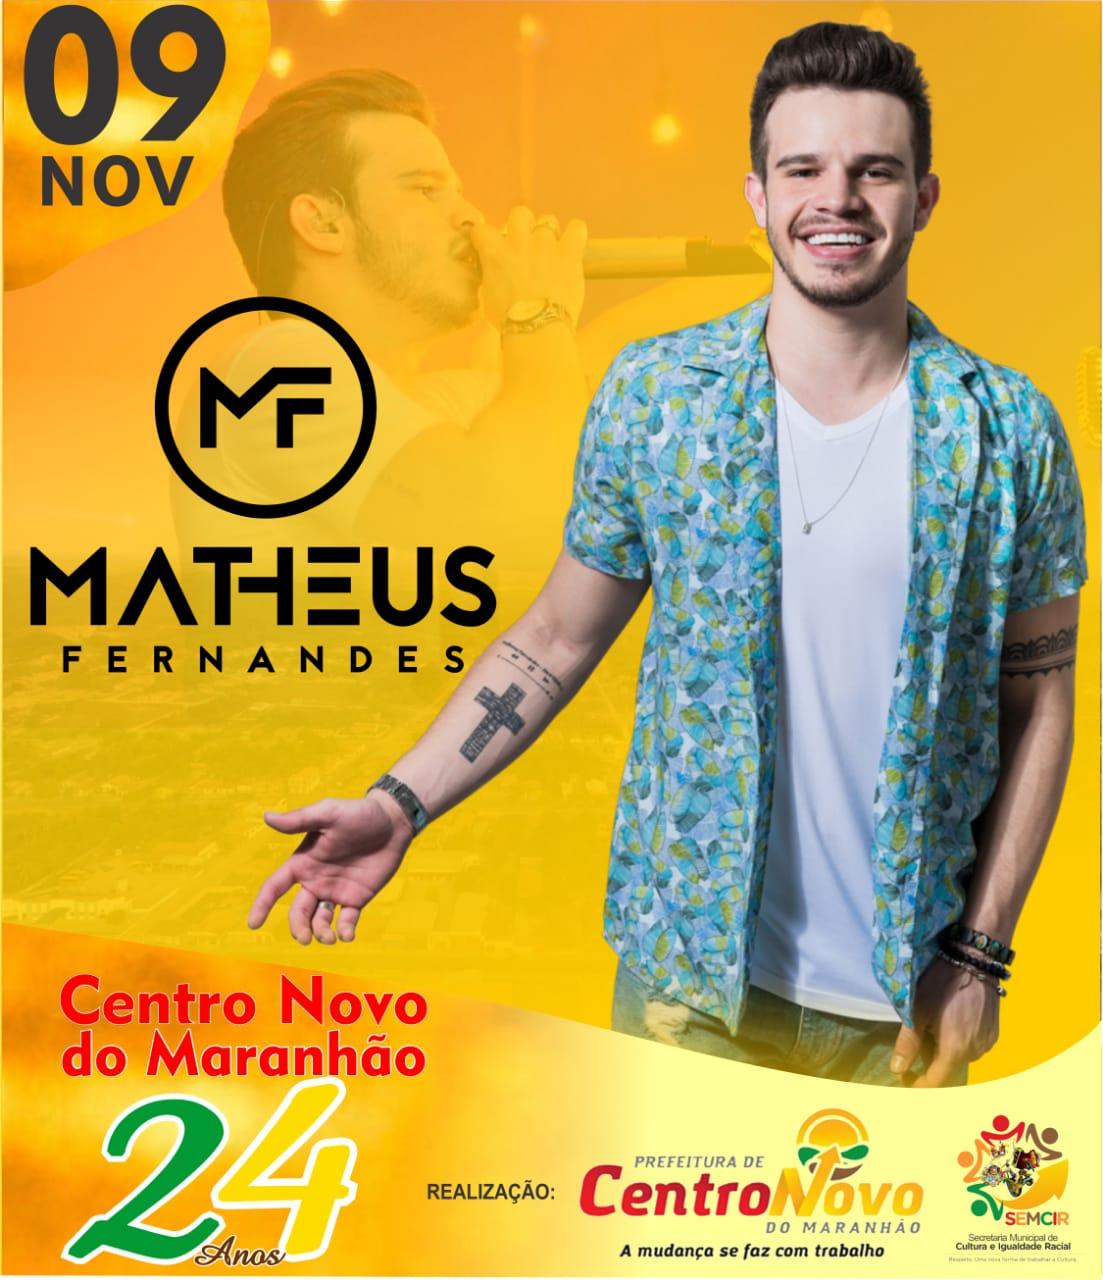 Matheus Fernandes é a atração principal do Aniversário de Centro Novo do Maranhão